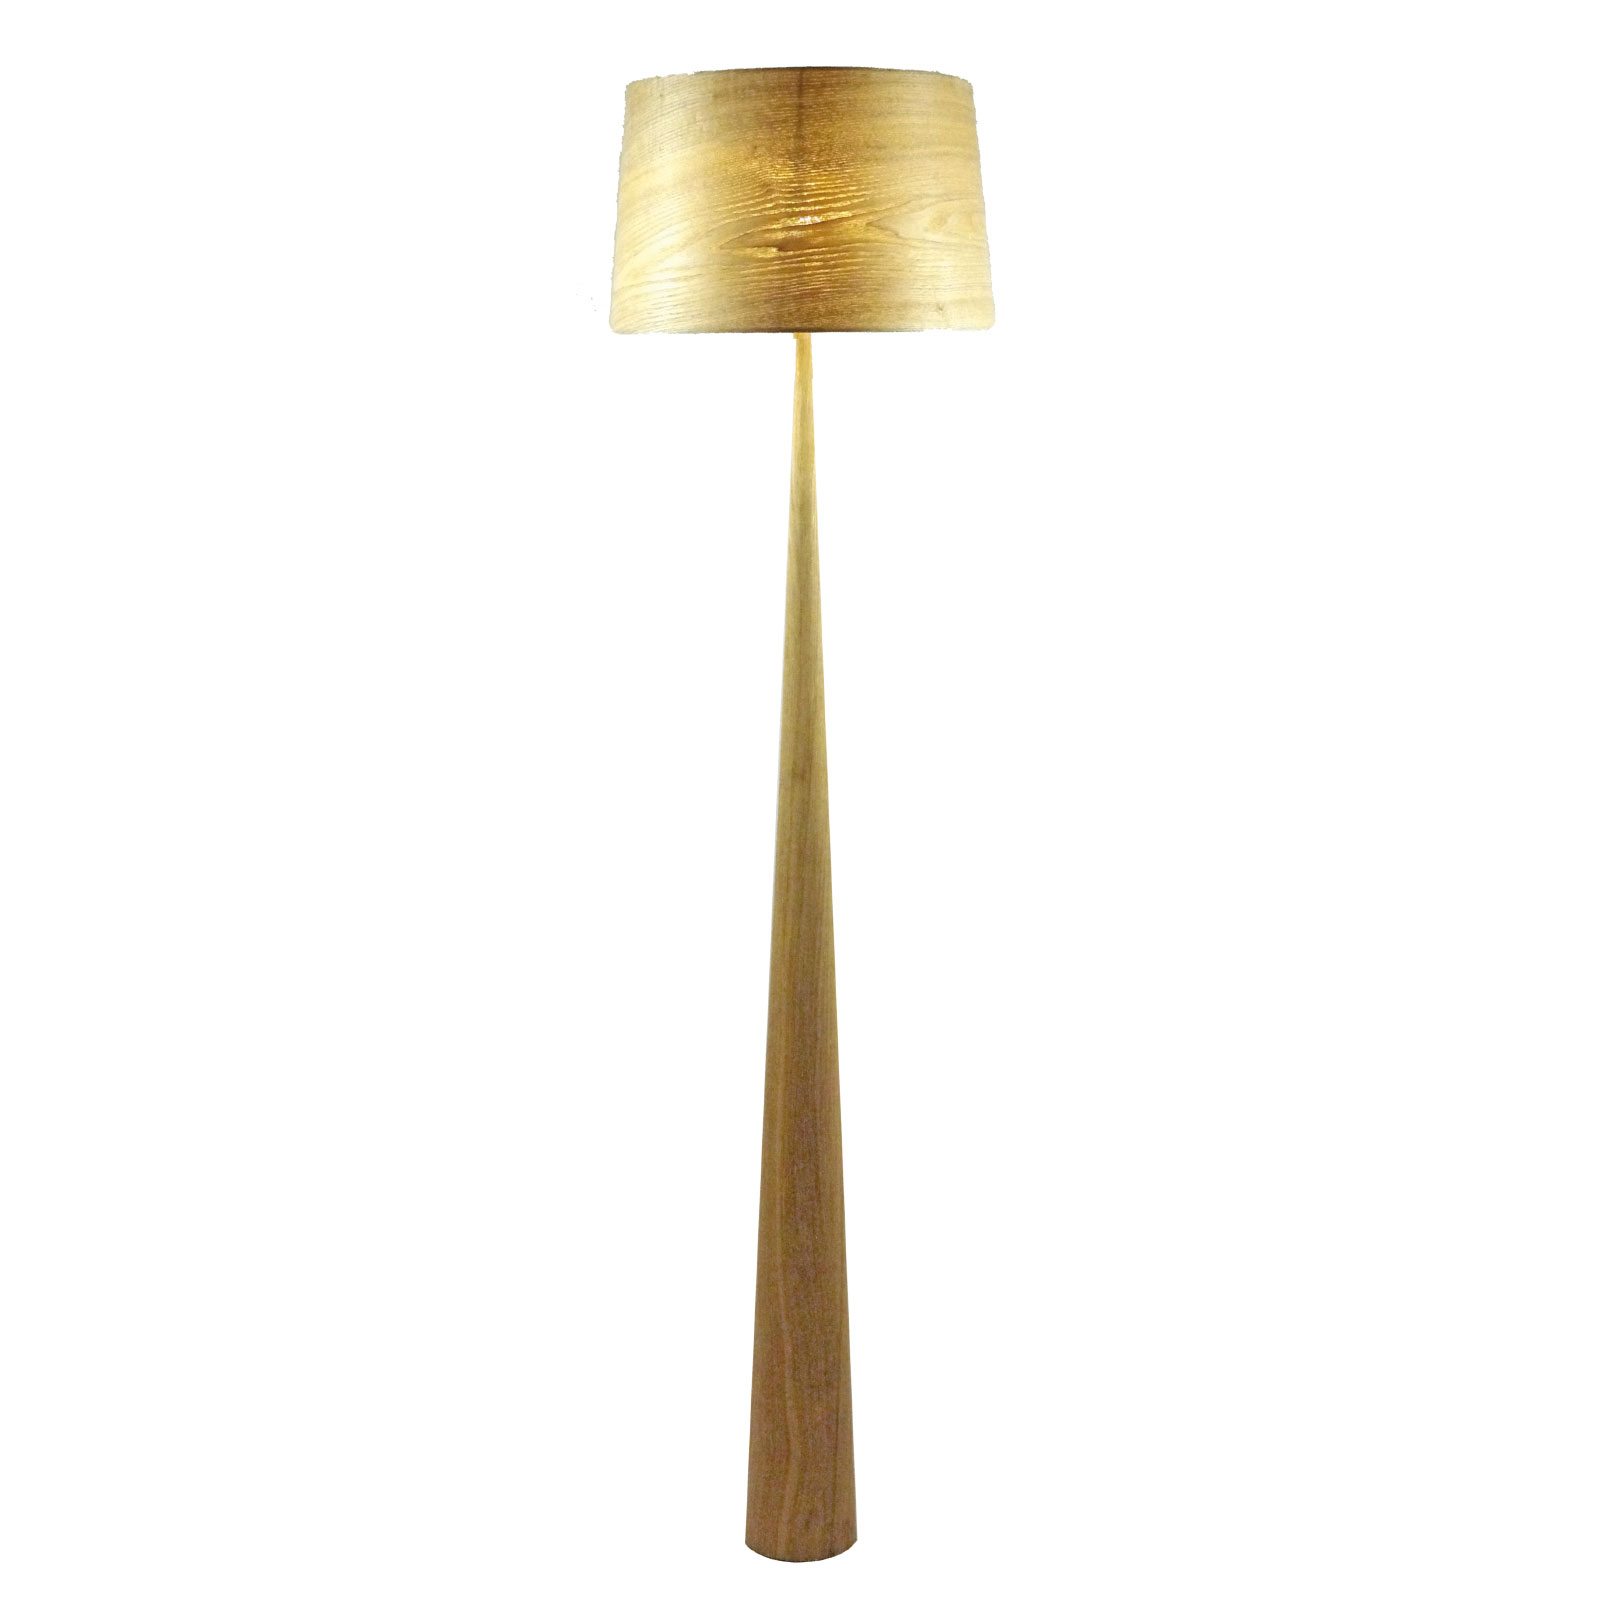 Totem LS floor lamp, metal, real wood veneer